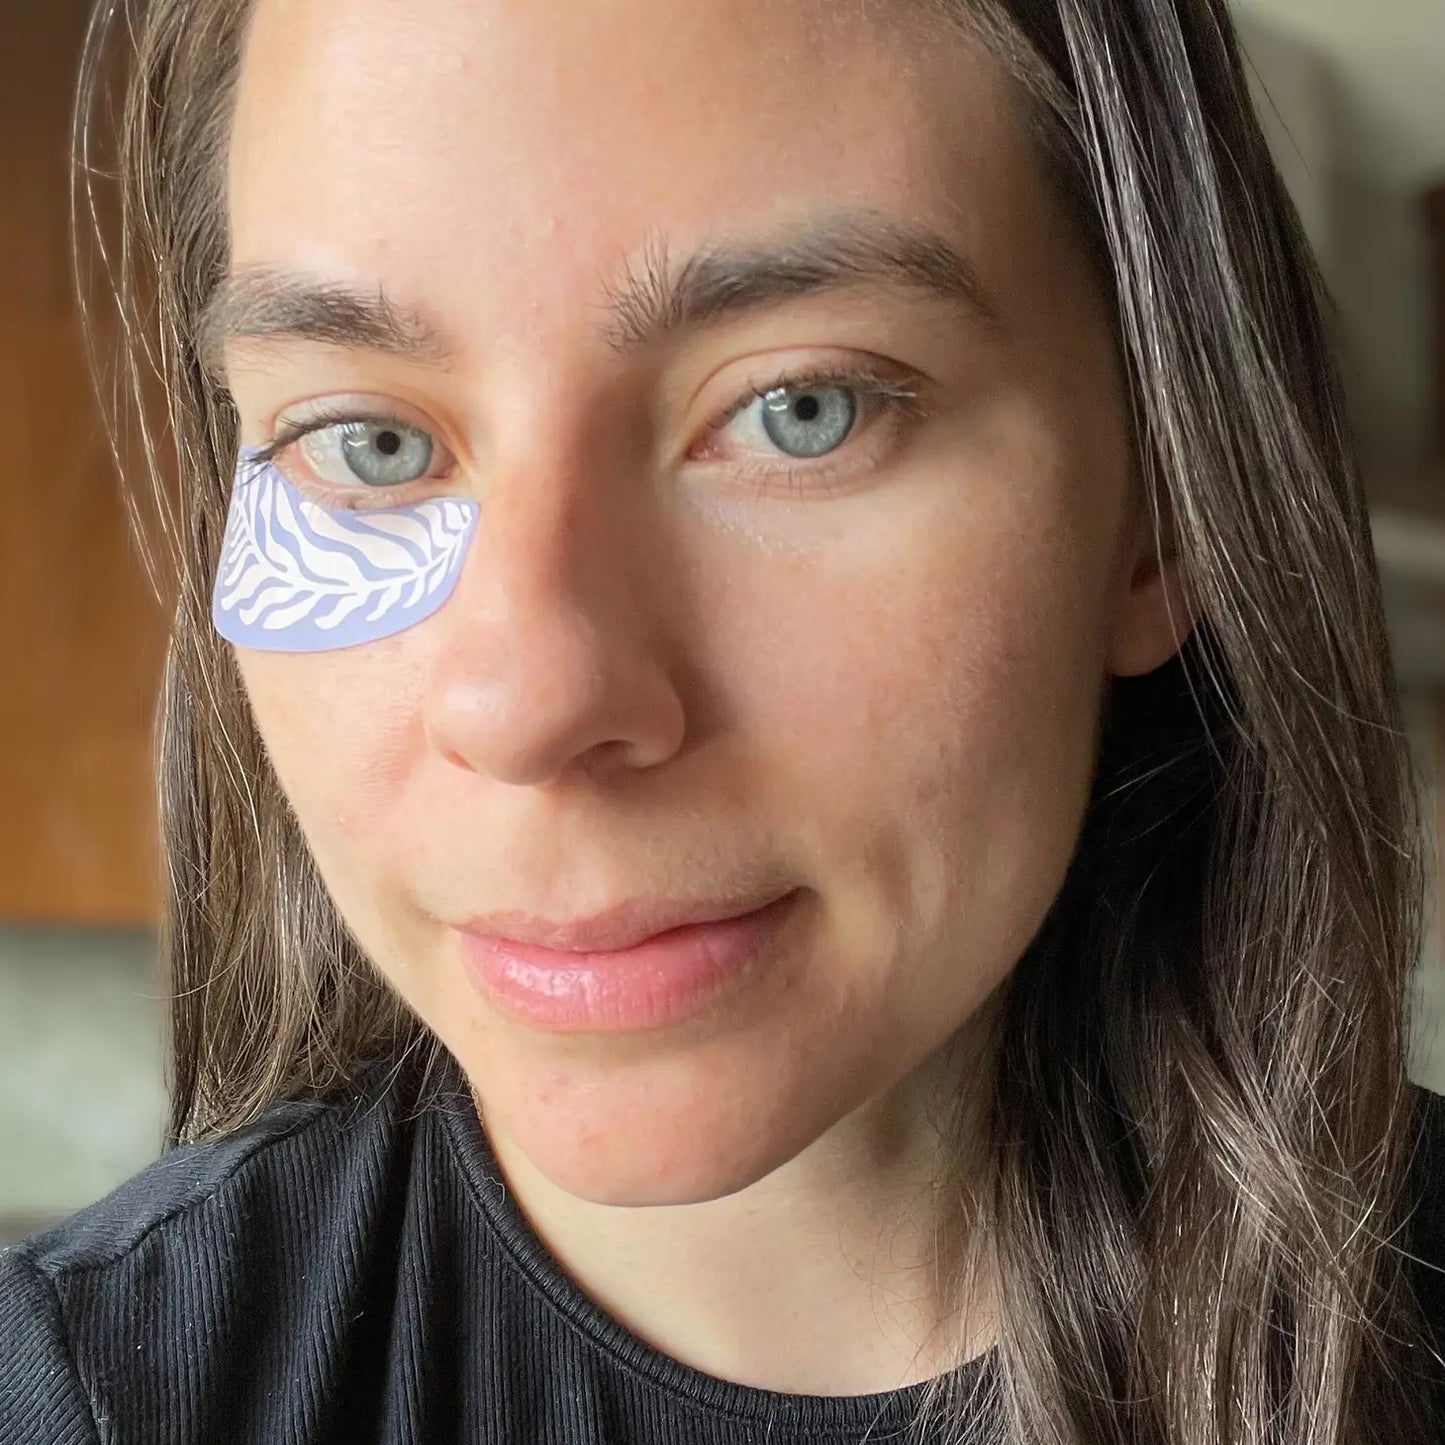 Reusable Medical Grade Silicone Eye Masks